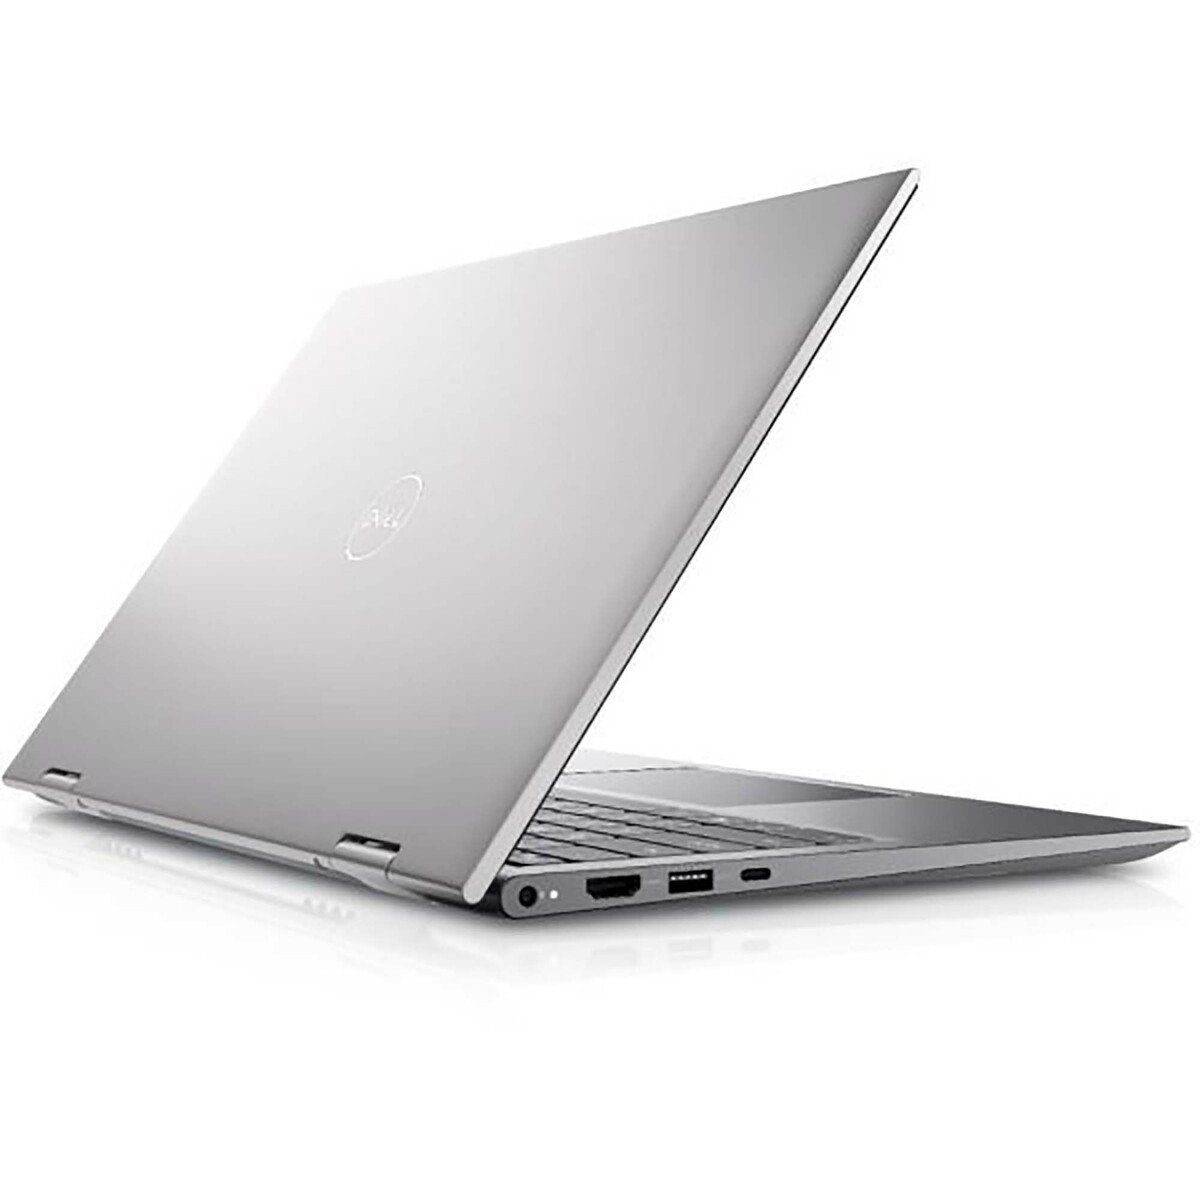 Dell 5410-INS14-5049 2-in-1 Laptop – Core i7-1165G7,8GB RAM, 512GB SSD,GeForce(R) MX350 with 2GB, WinDOWS 10, 14inch FHD, Silver, English/Arabic Keyboard